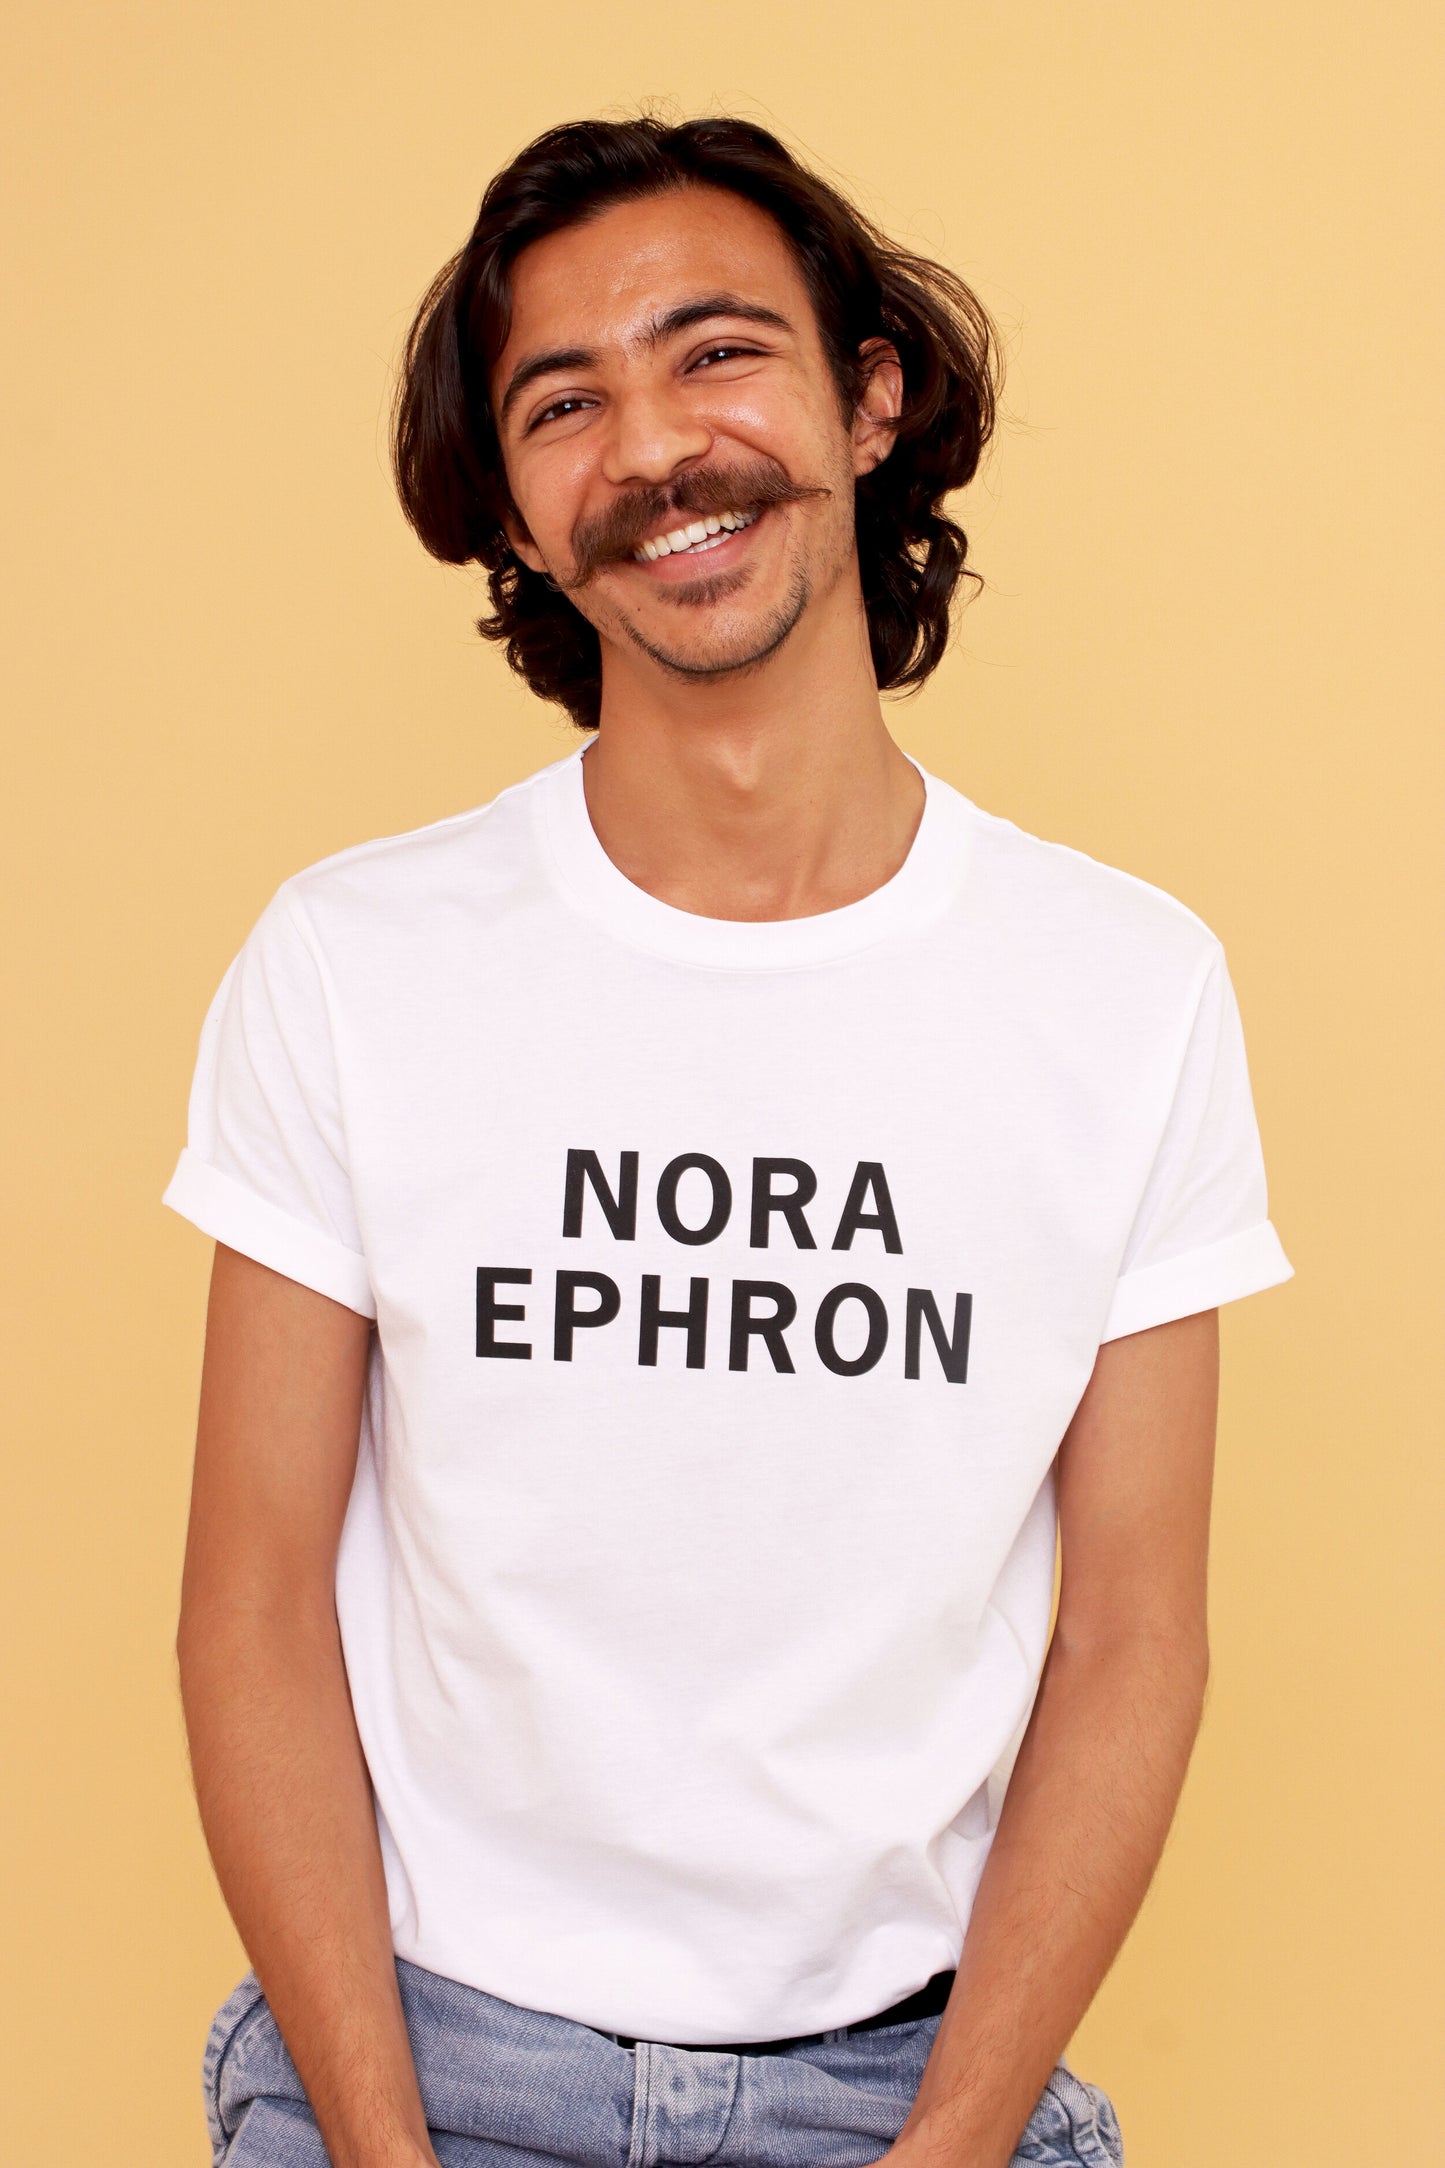 NORA EPHRON